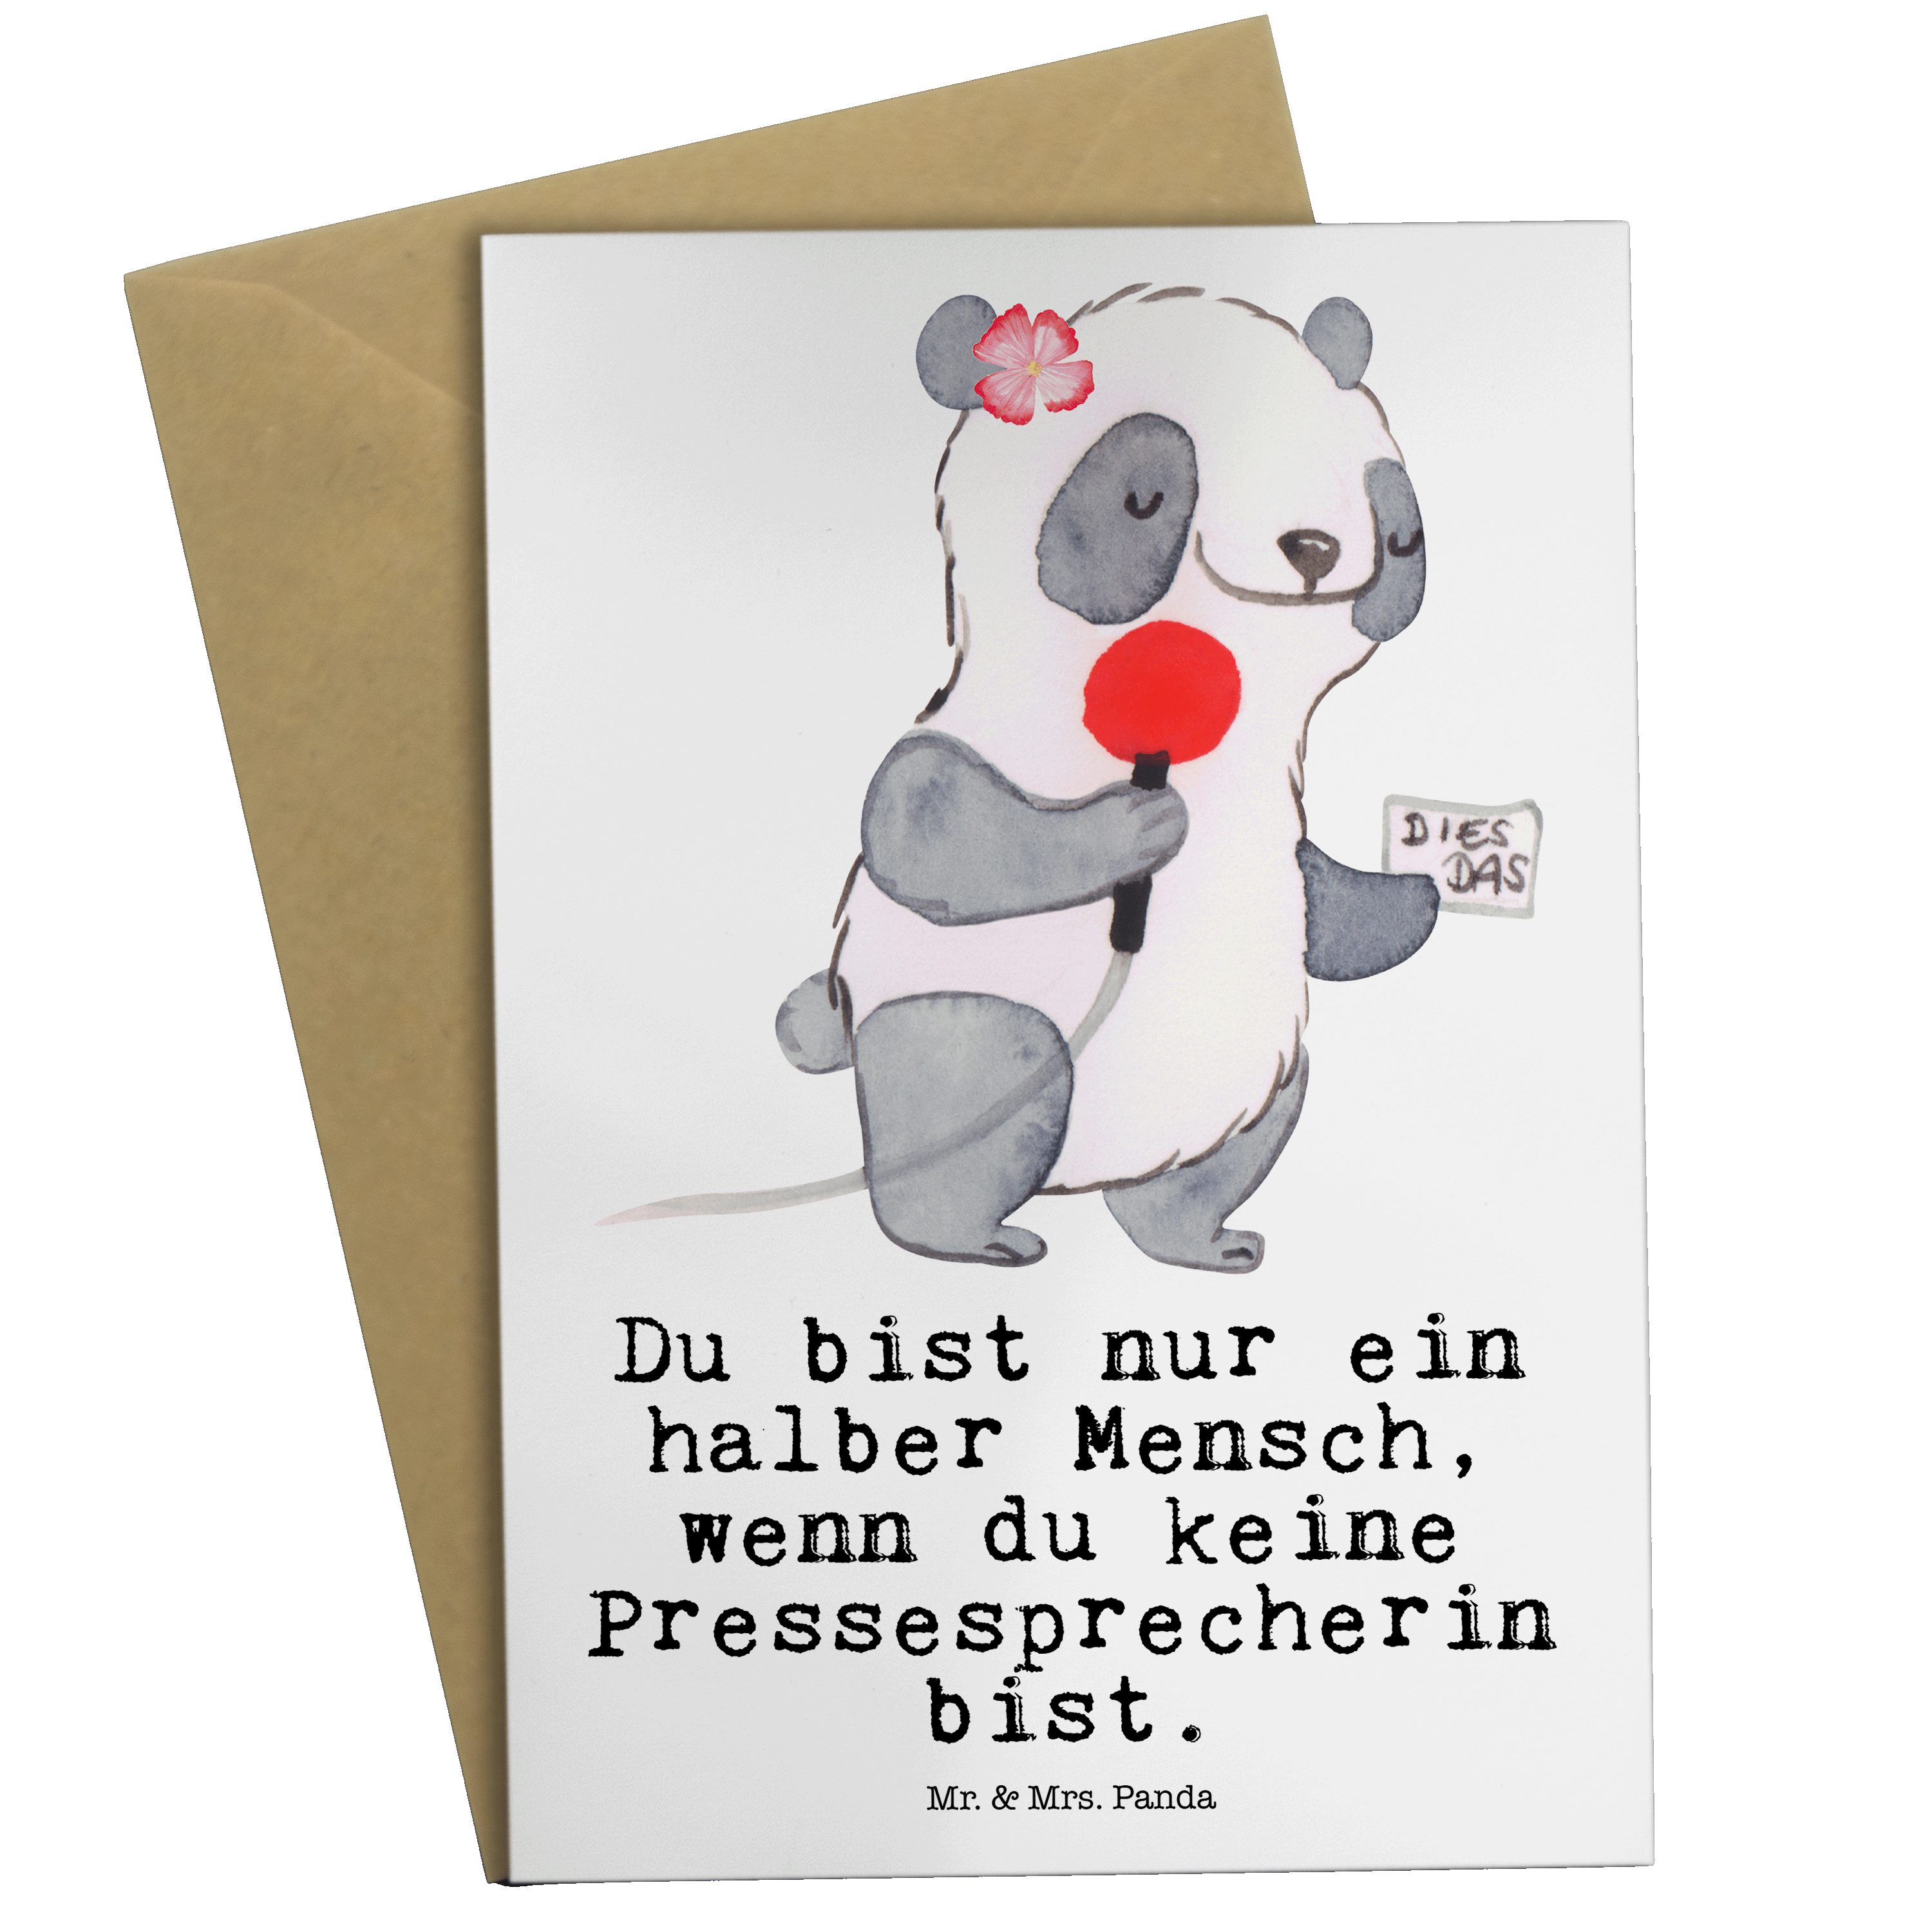 Mr. & Mrs. Panda Grußkarte Pressesprecherin mit Herz - Weiß - Geschenk, Mitarbeiter, Glückwunsch